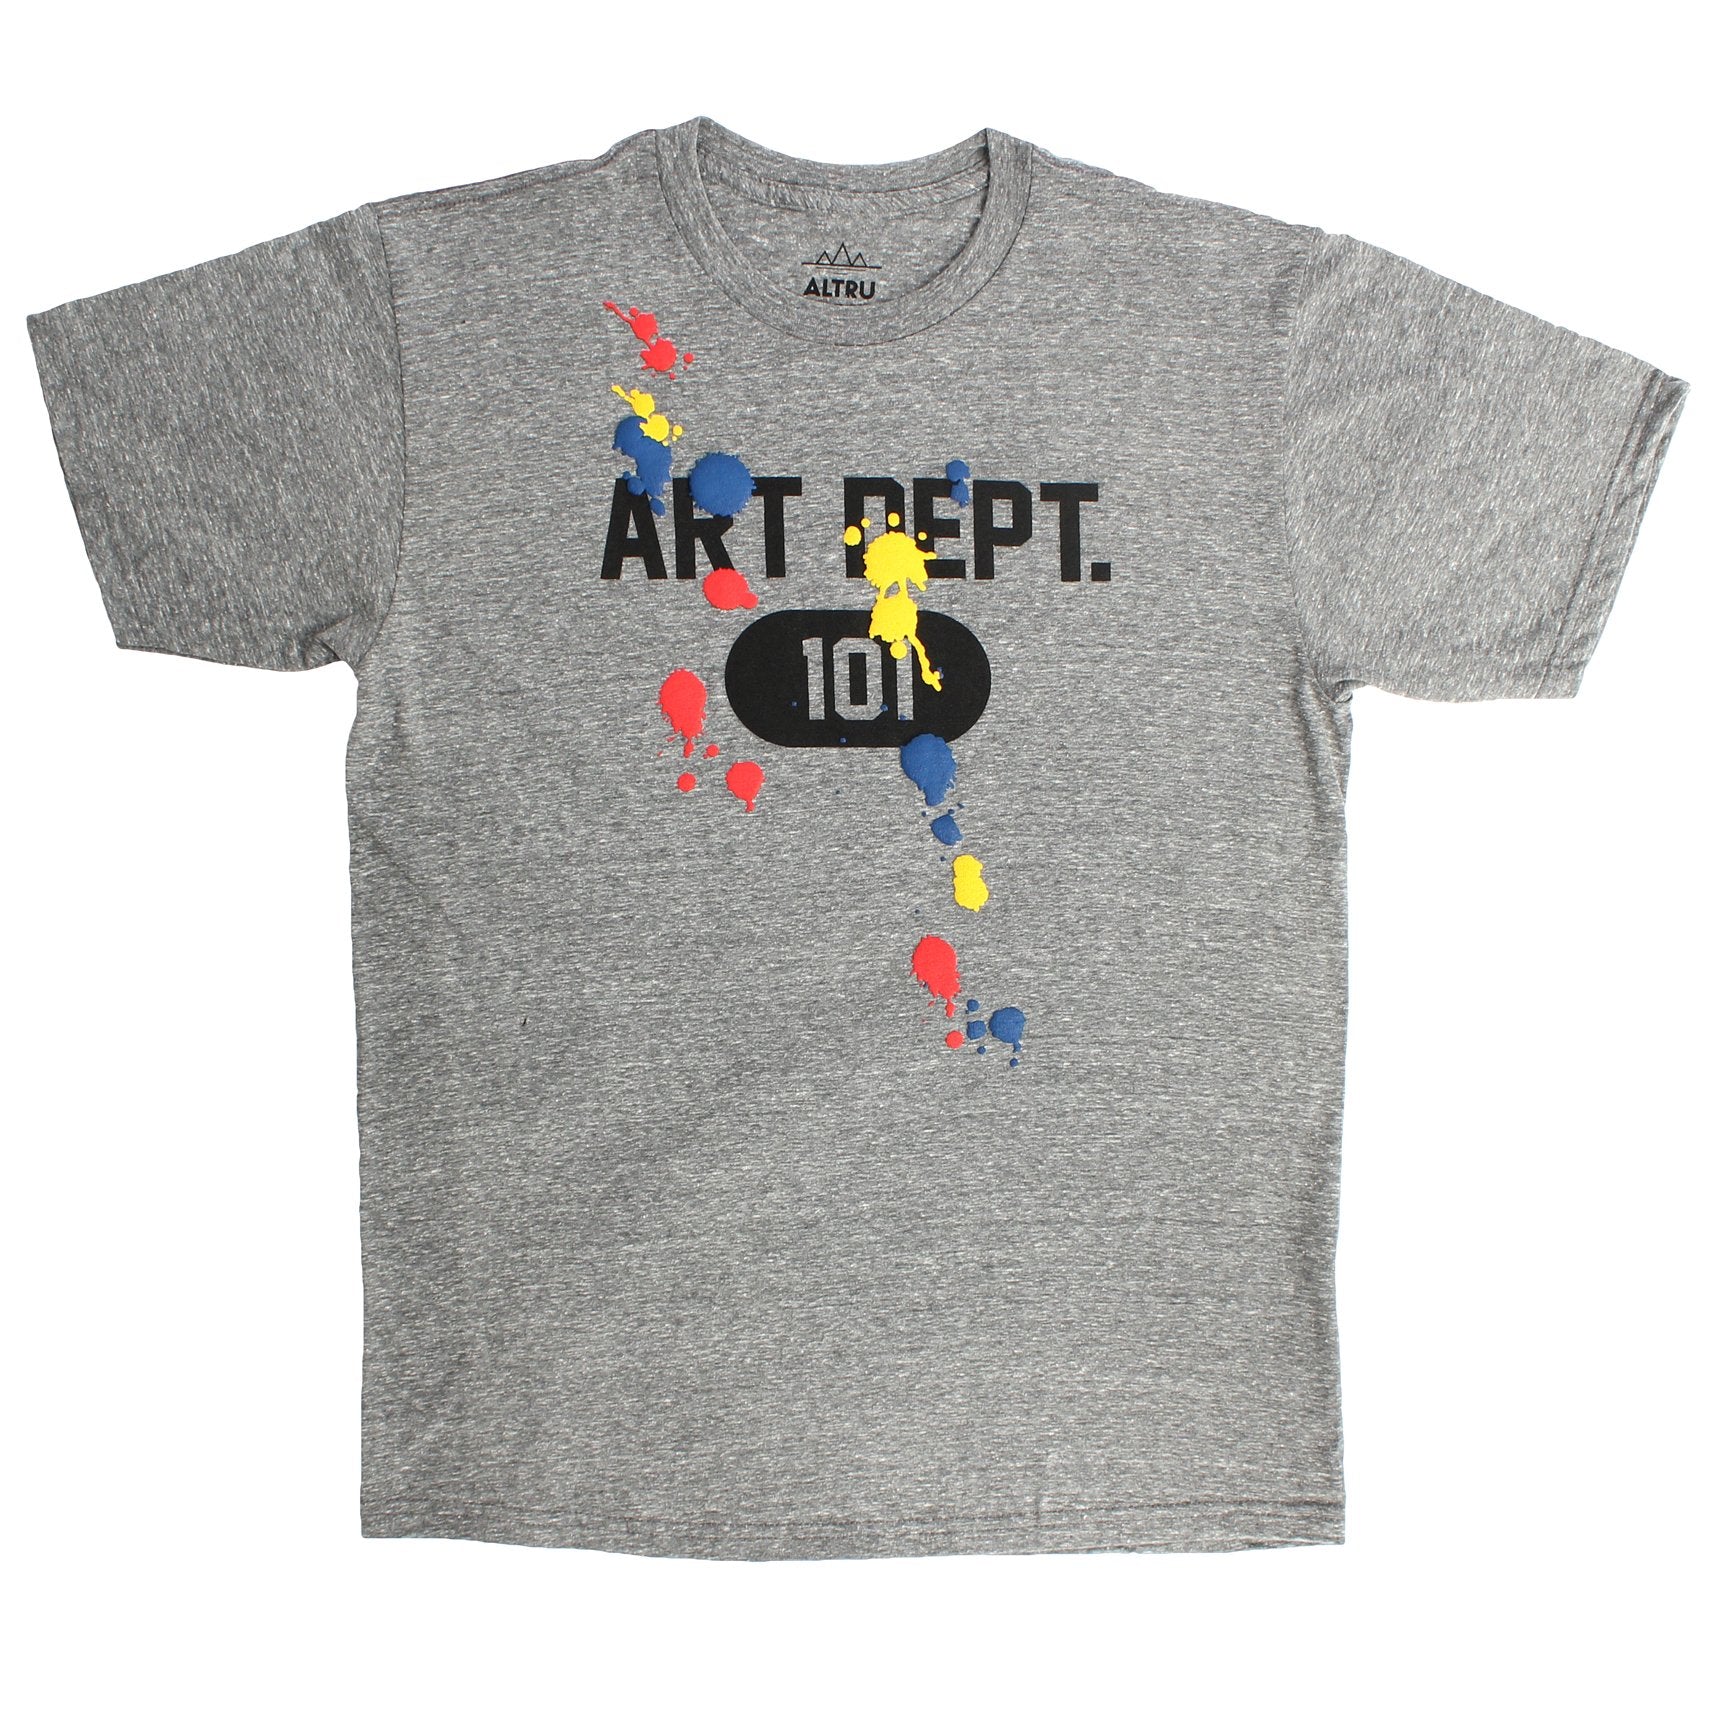 Art Dept. 101 Puffy Paint Splats Fun Graphic T-shirt